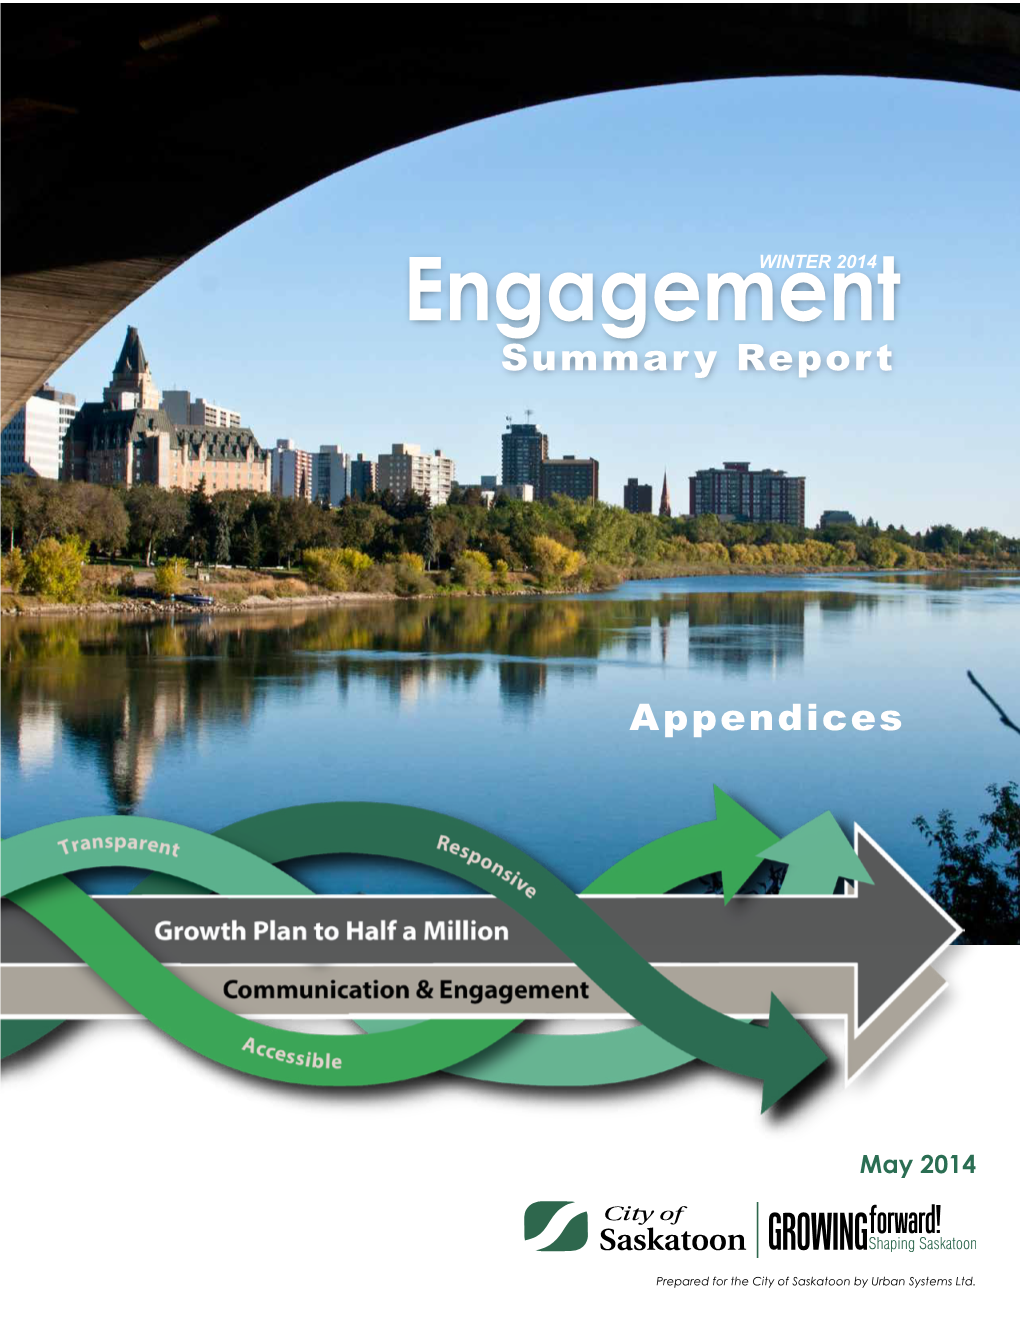 Engagementwinter 2014 Summary Report